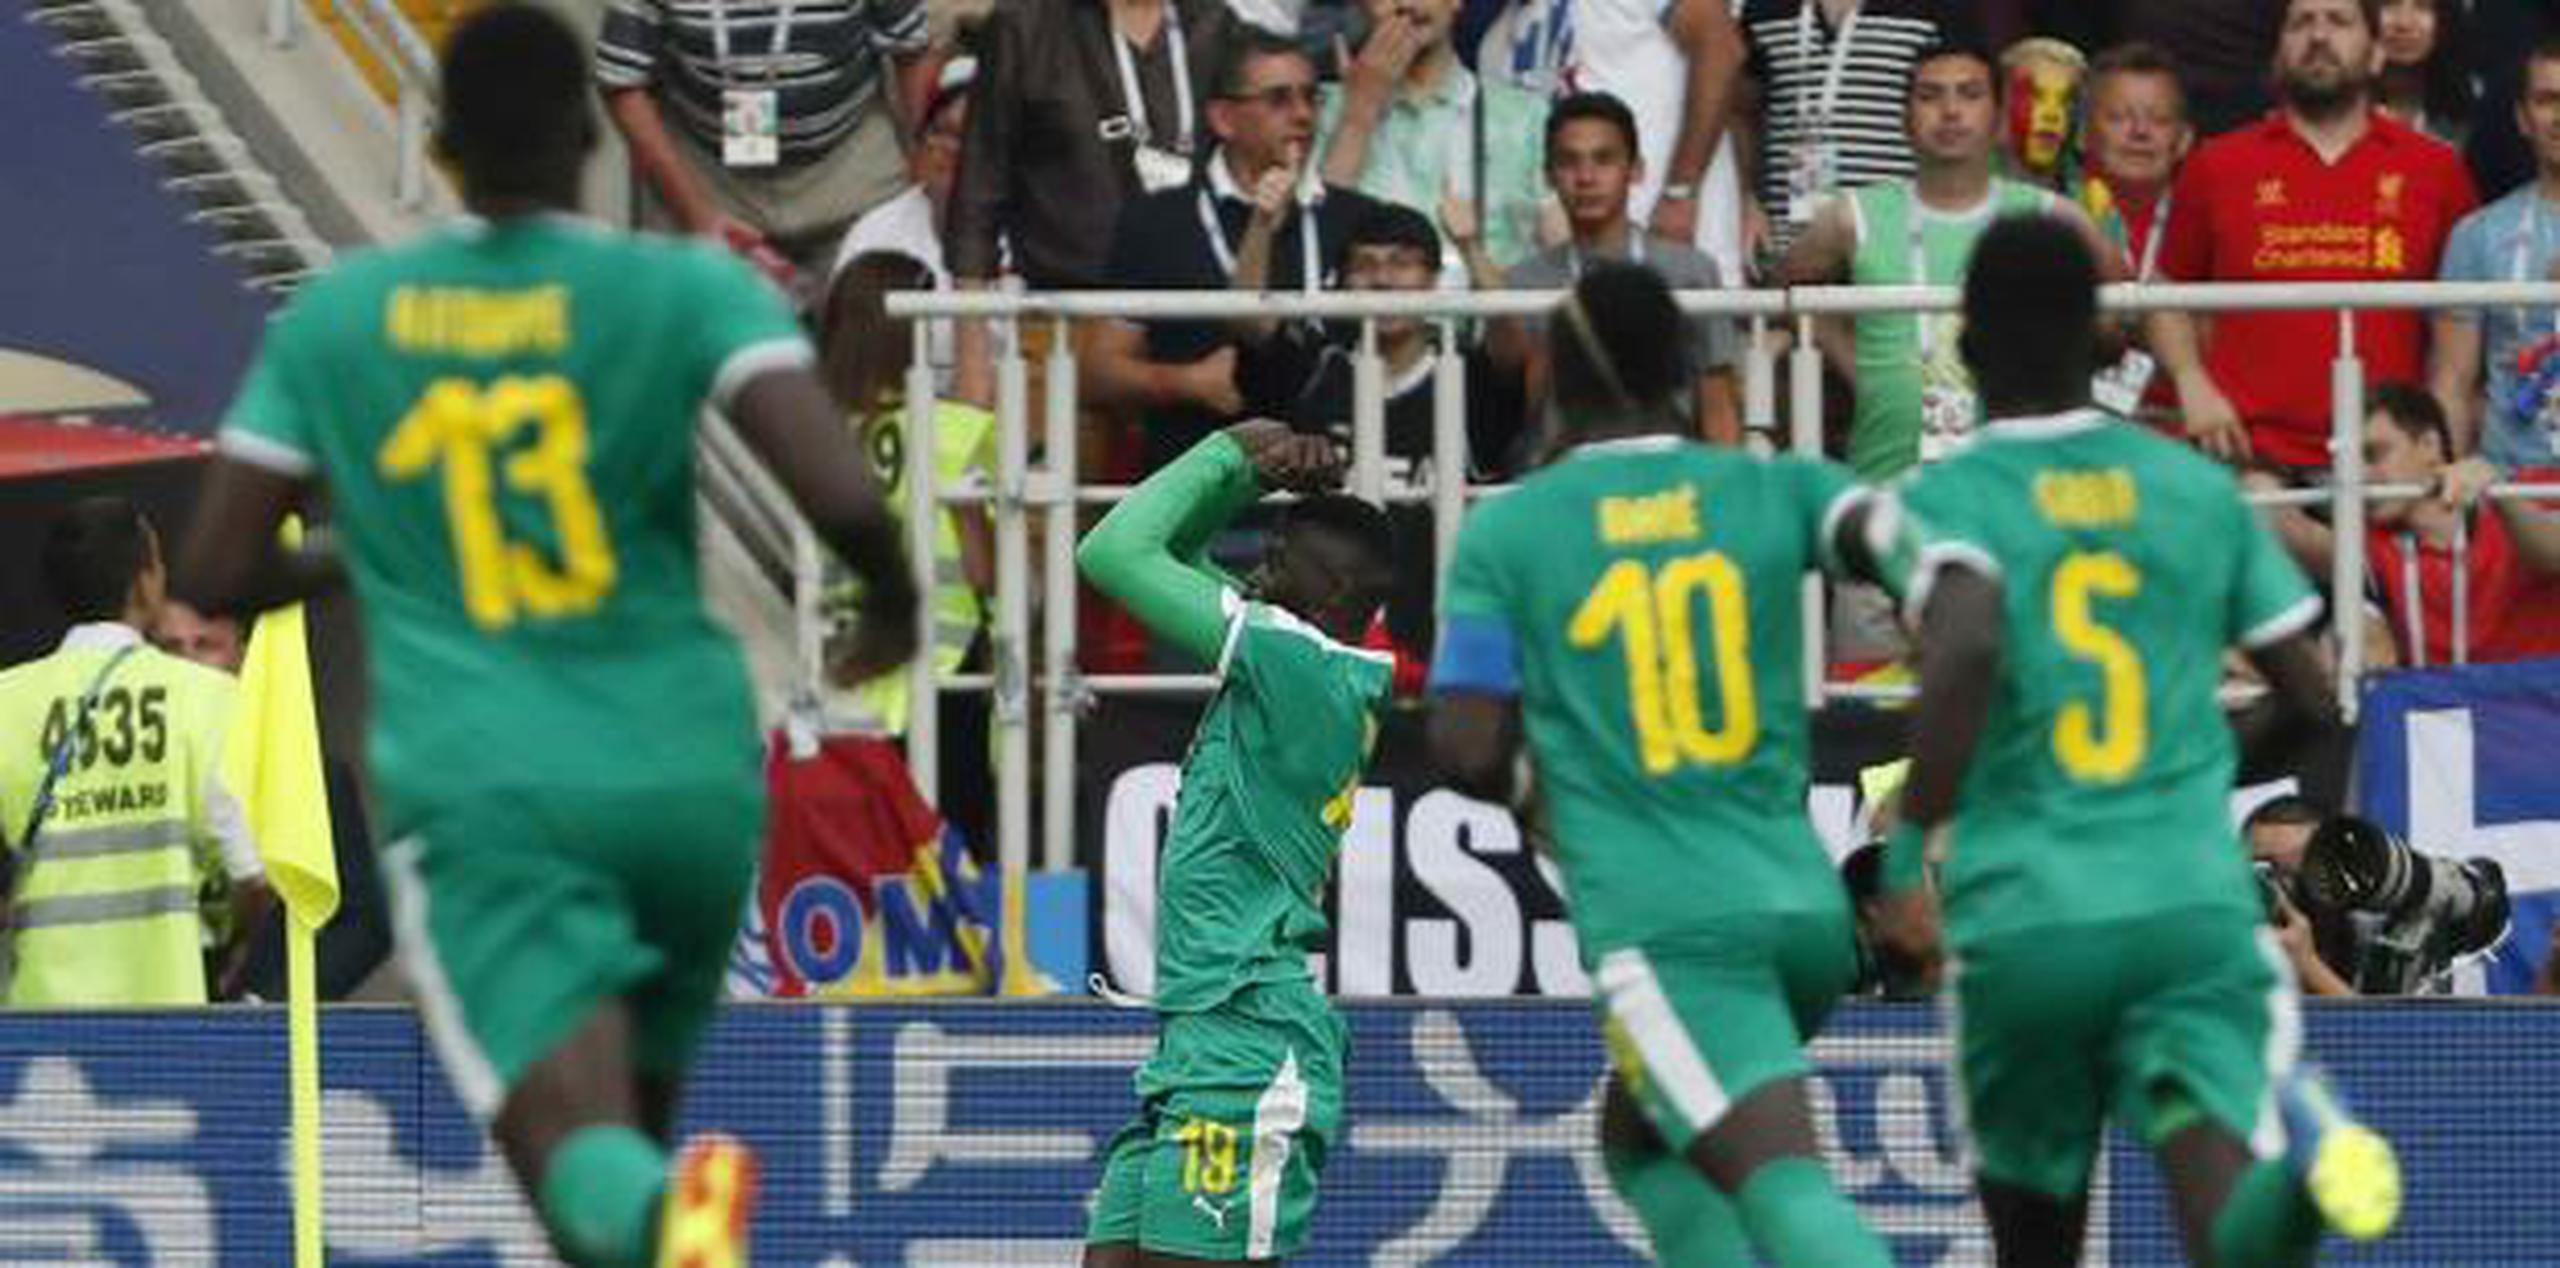 El senegalés Mbaye Niang, segundo a la izquierda, celebra con sus compañeros después de anotar el segundo gol de su equipo durante el partido del grupo H entre Polonia y Senegal. (AP)